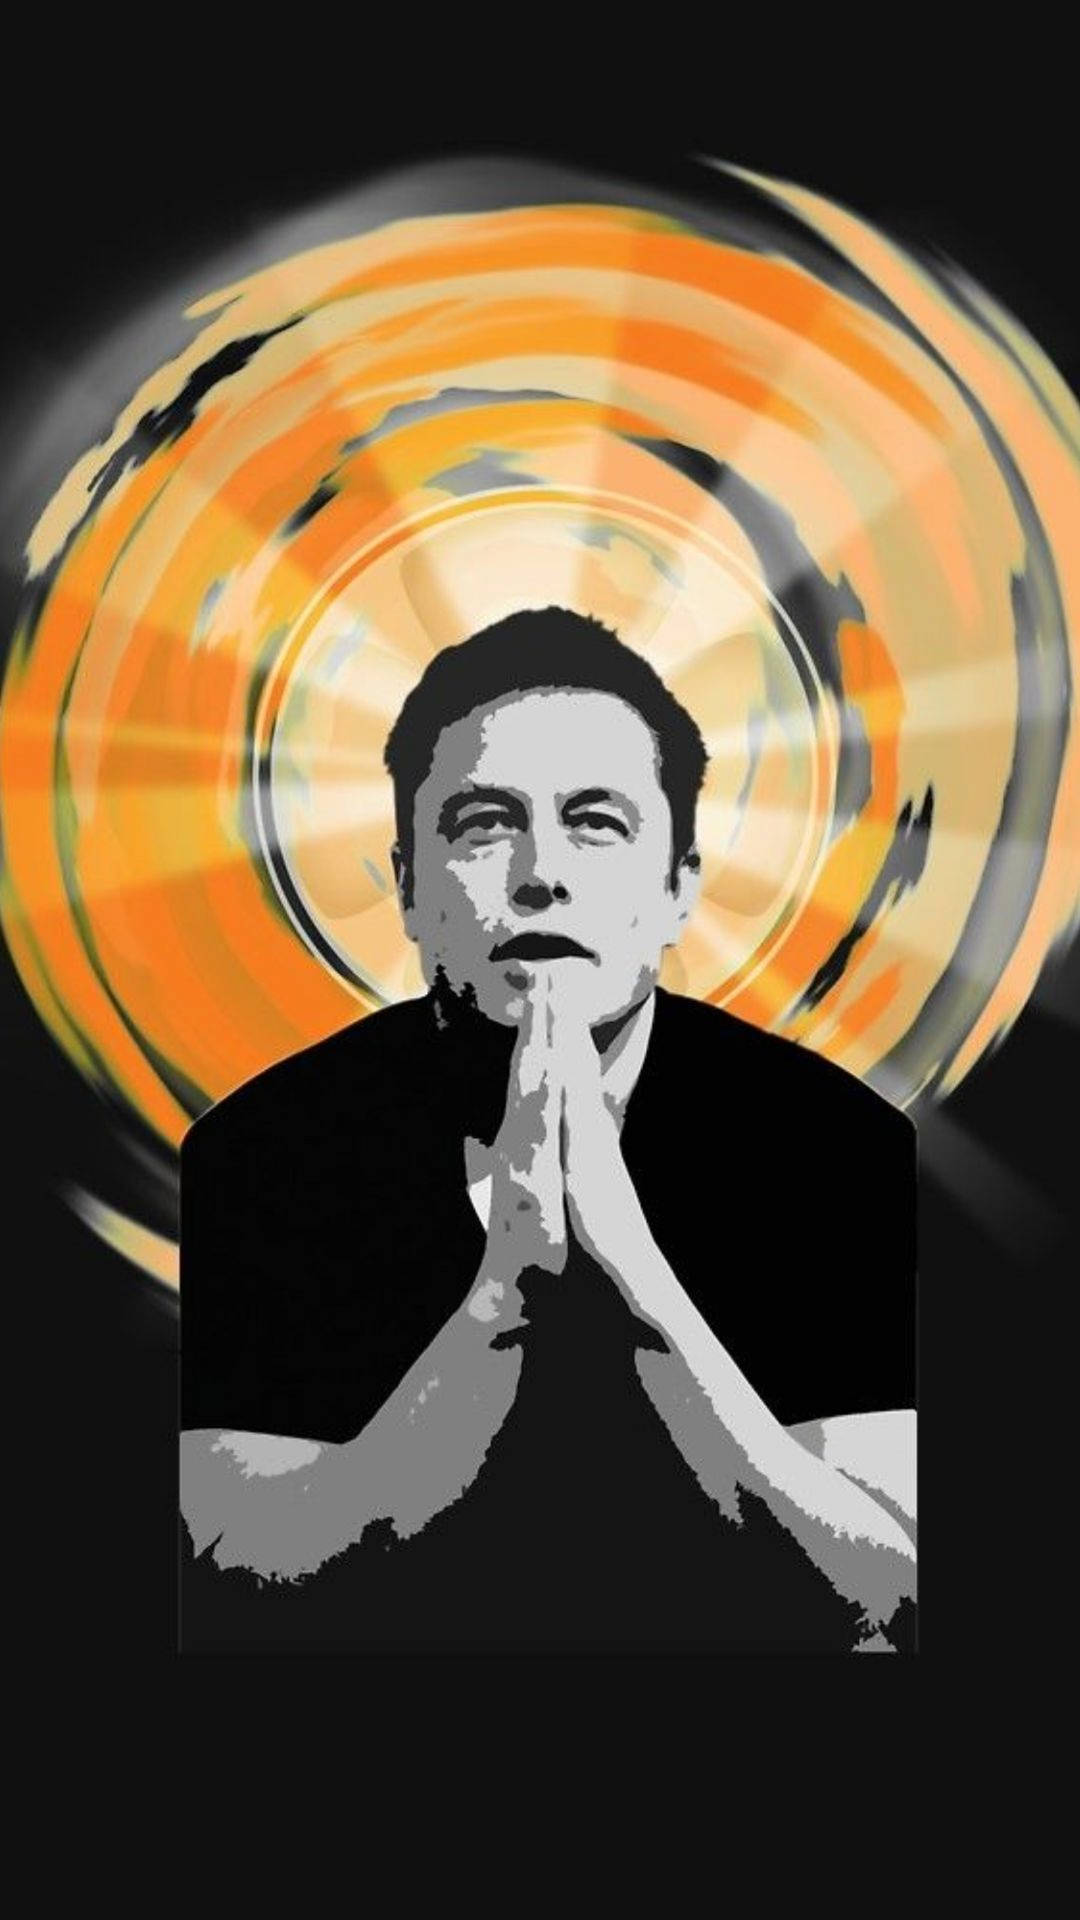 Caption: Visionary Innovator - Elon Musk Fan Art